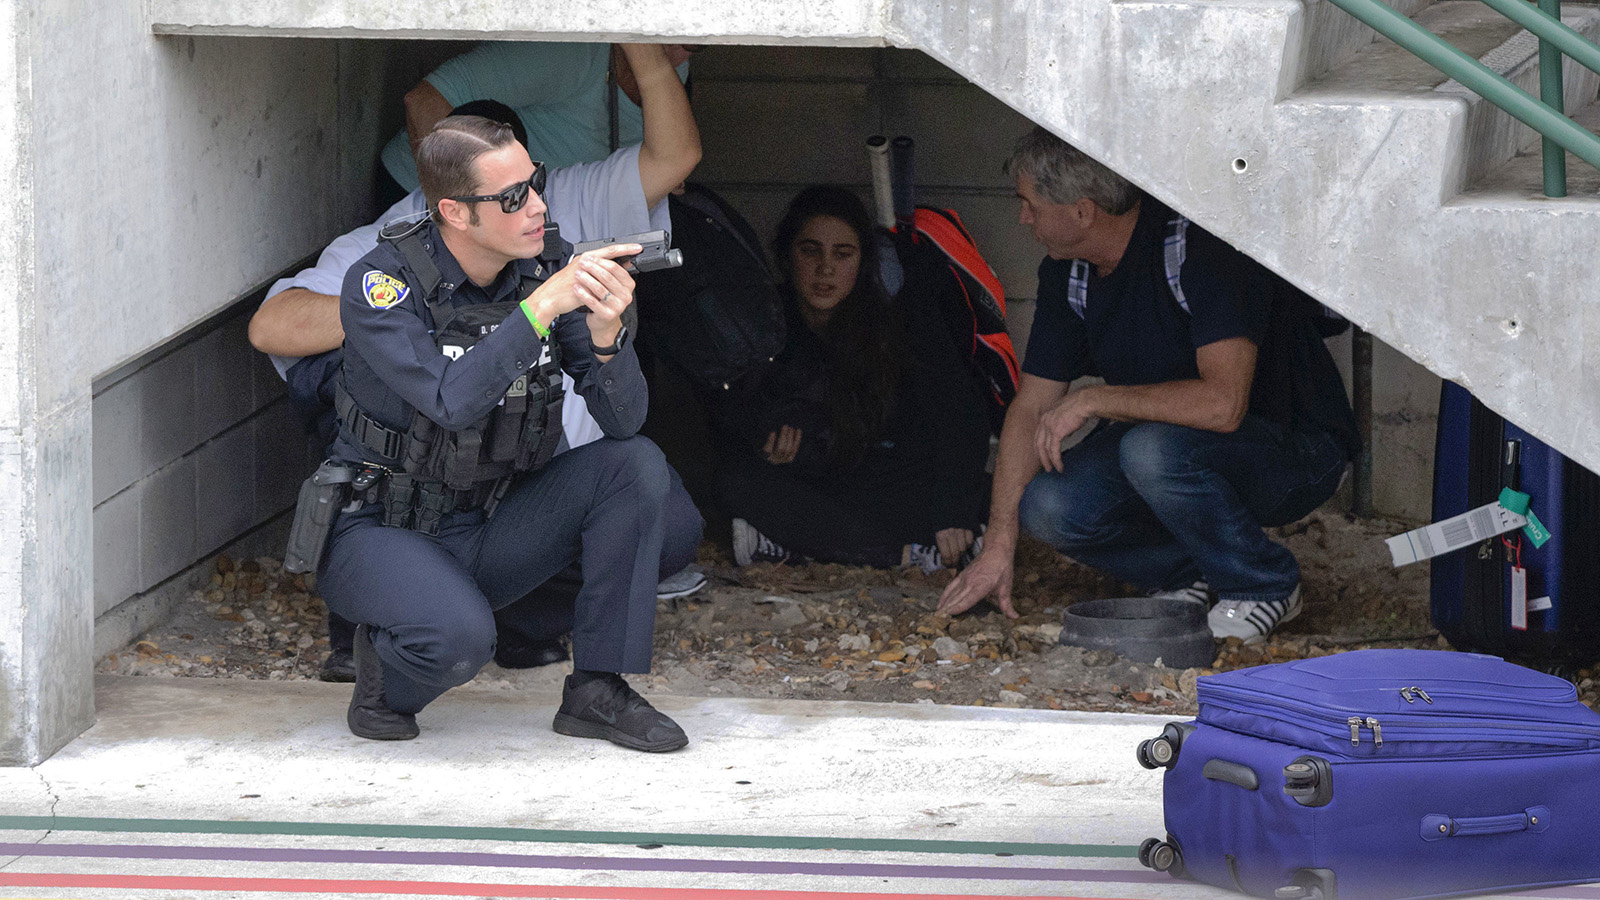 שוטר מגינים על אזרחים באיזור אחסון בשדה התעופה בפלורידה בעקבות הירי (צילום: סוכנות AP).